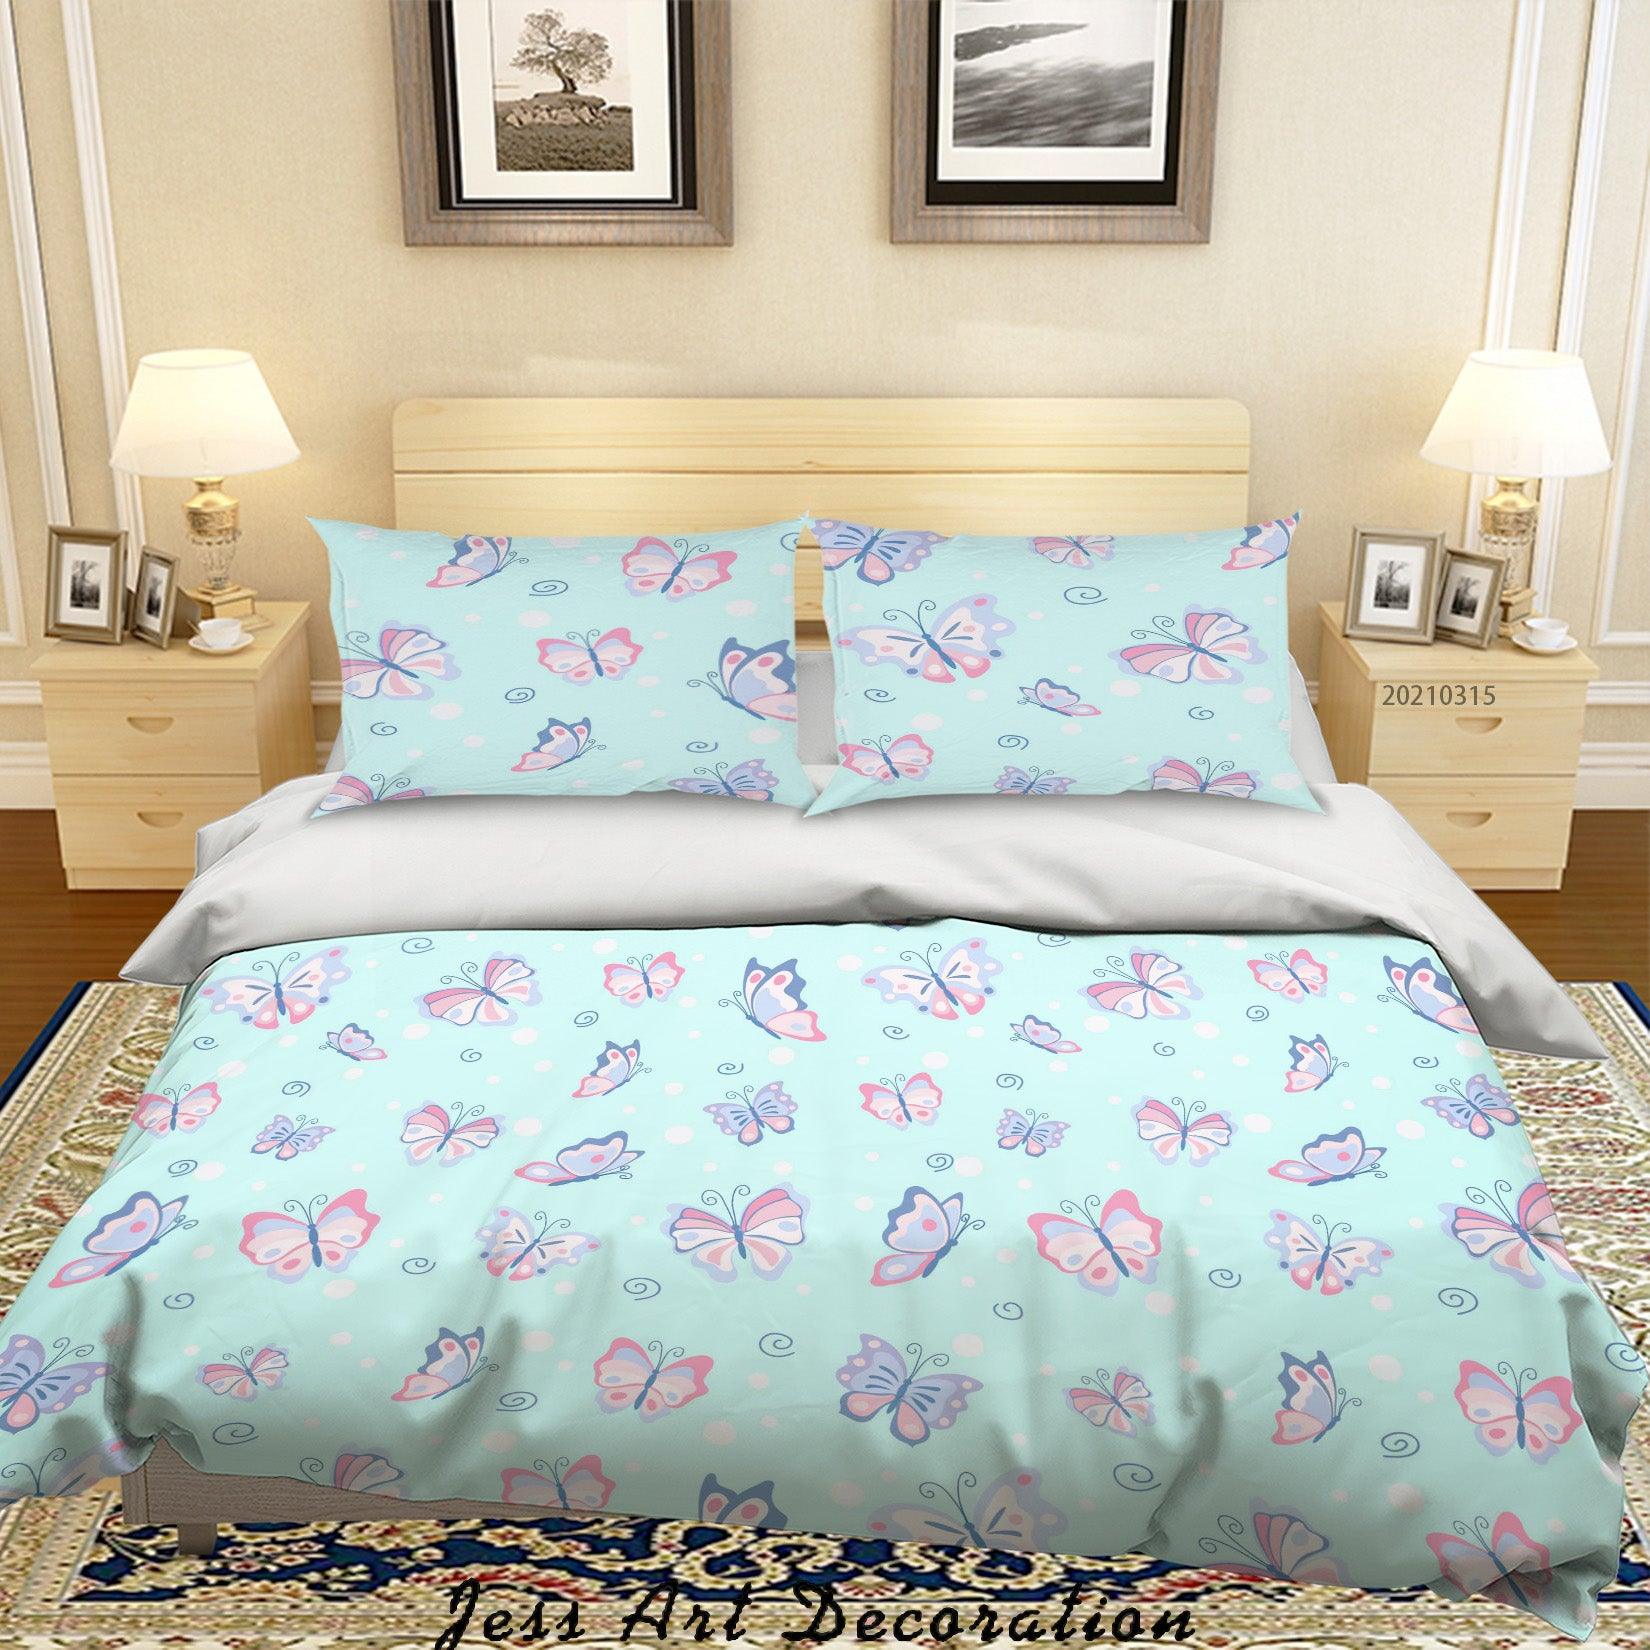 3D Watercolor Blue Butterfly Quilt Cover Set Bedding Set Duvet Cover Pillowcases 48- Jess Art Decoration